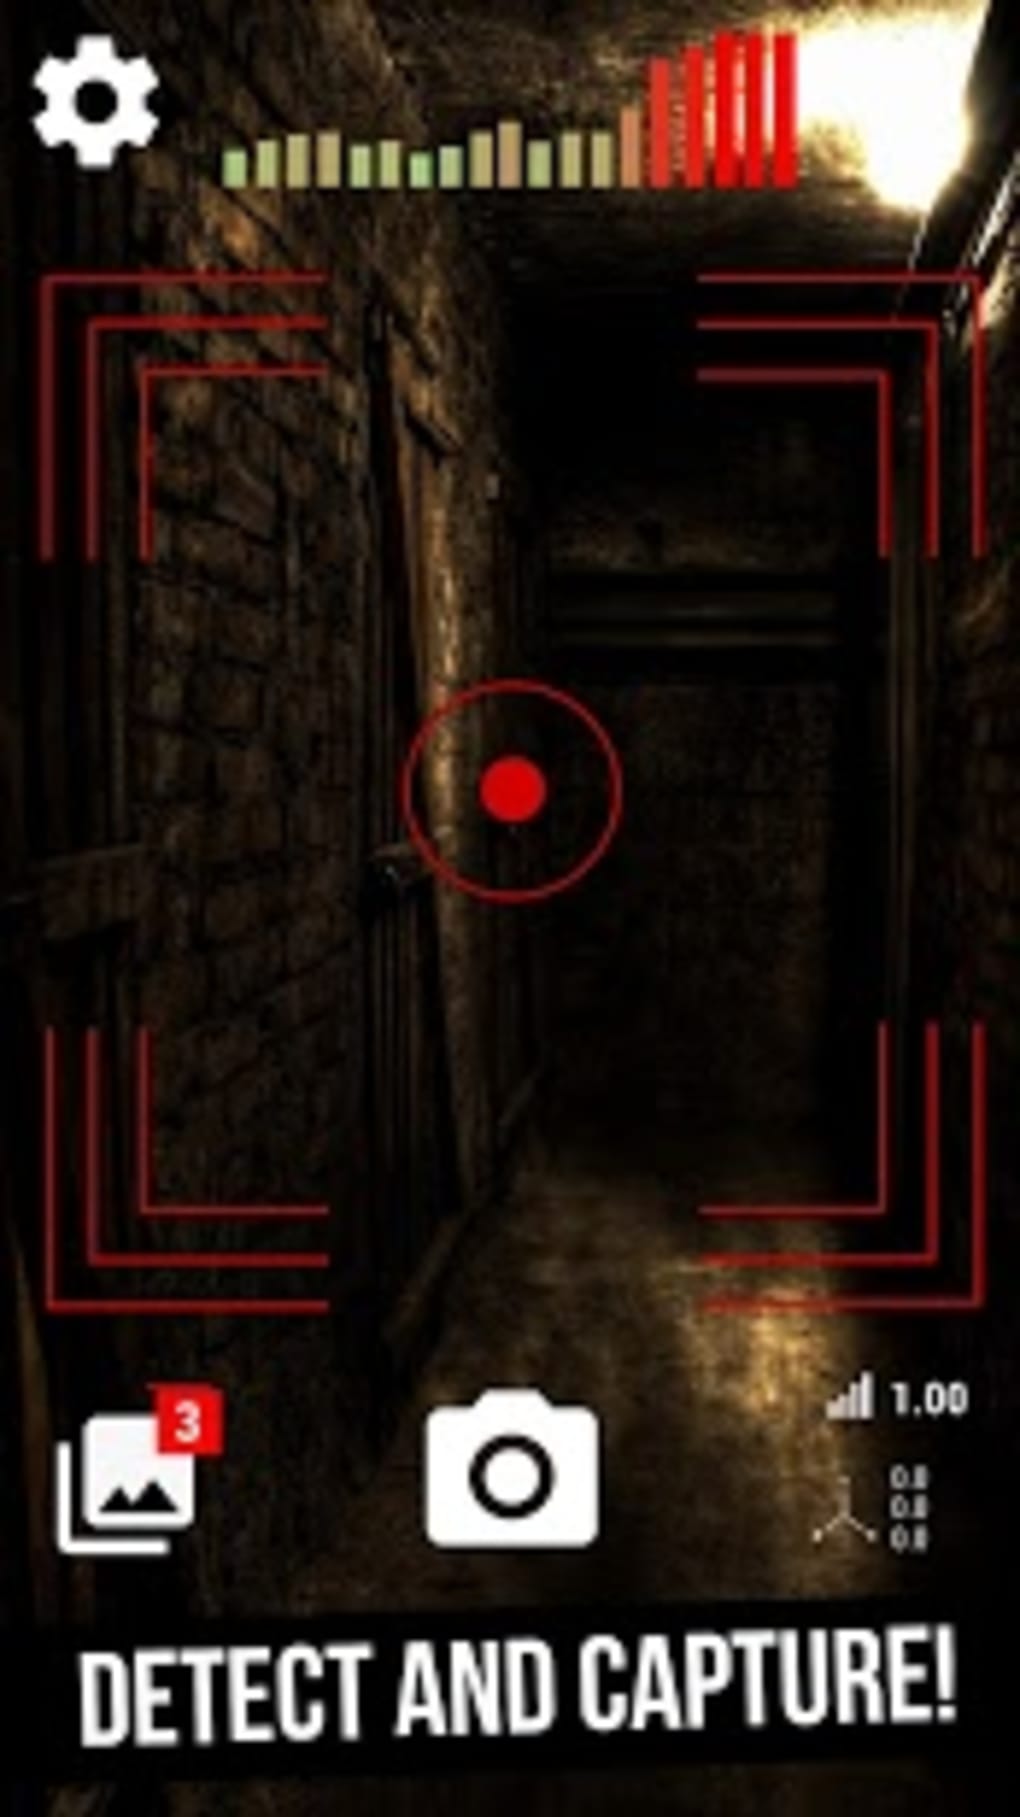 Caméra Détecteur de Fantôme dans l'App Store